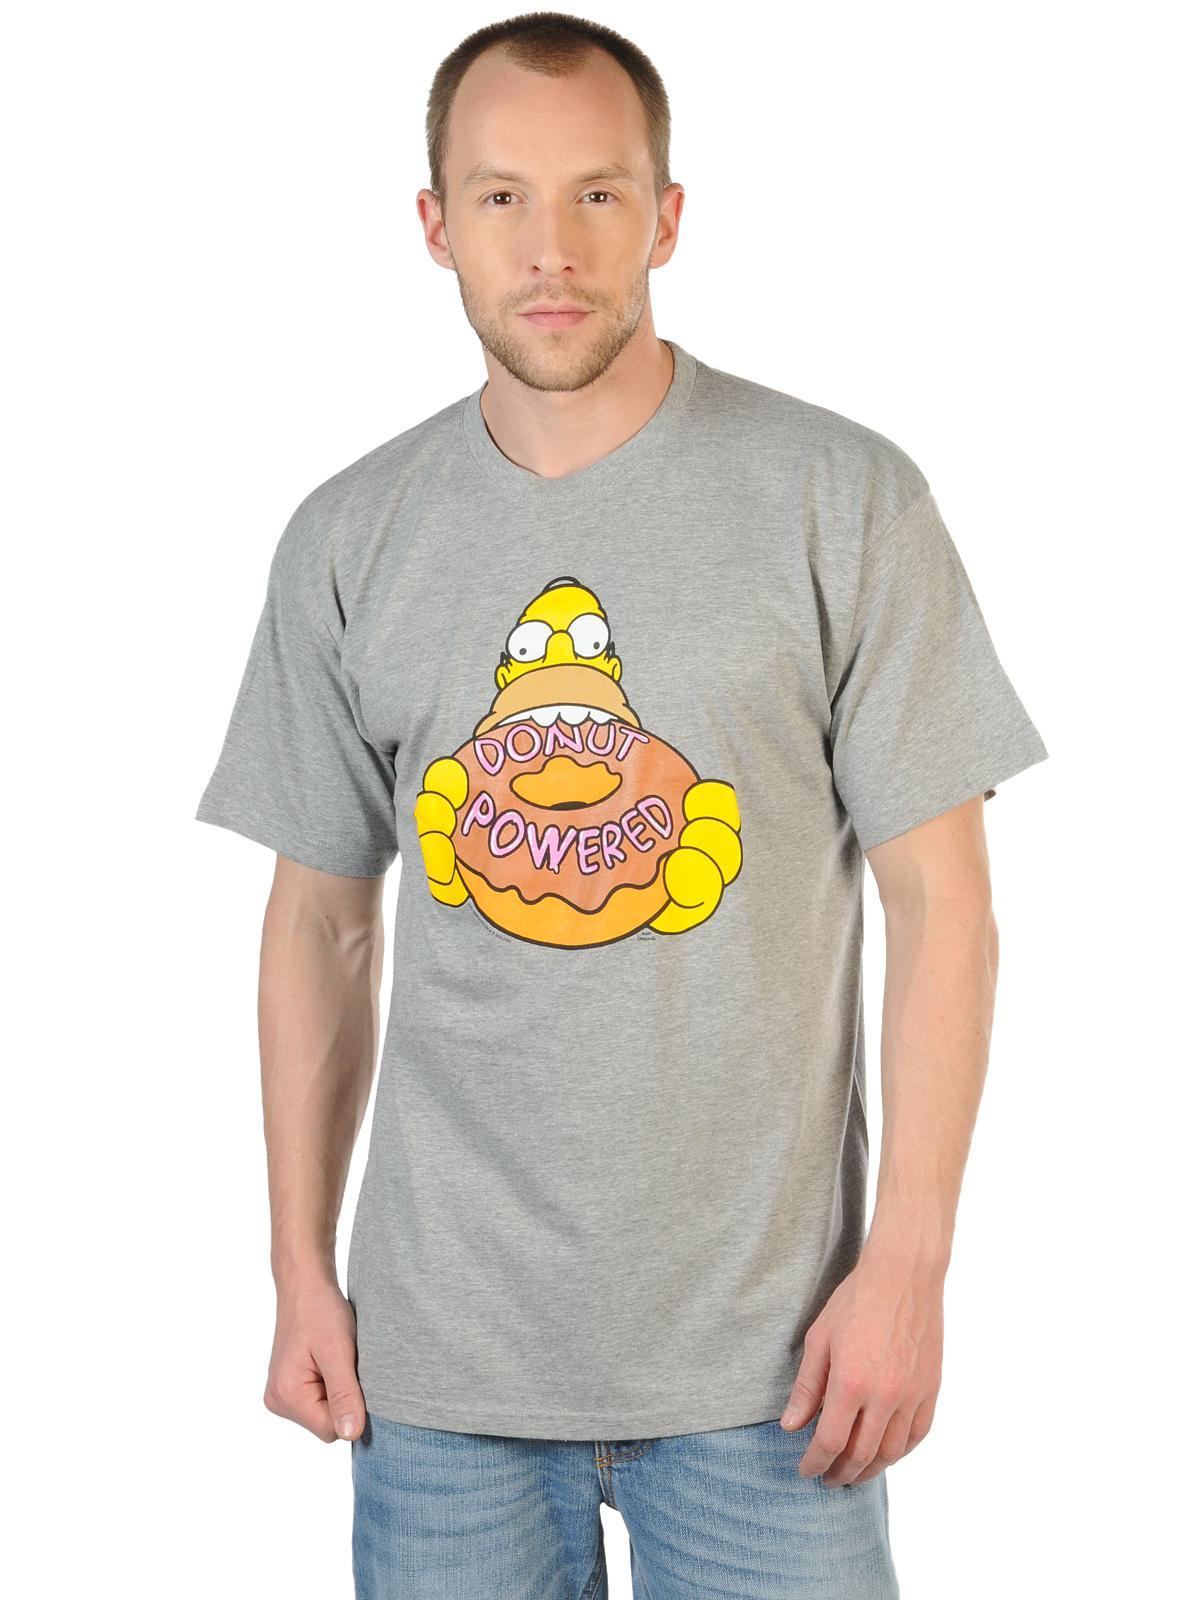 Foto The Simpsons Camiseta gris S foto 951290